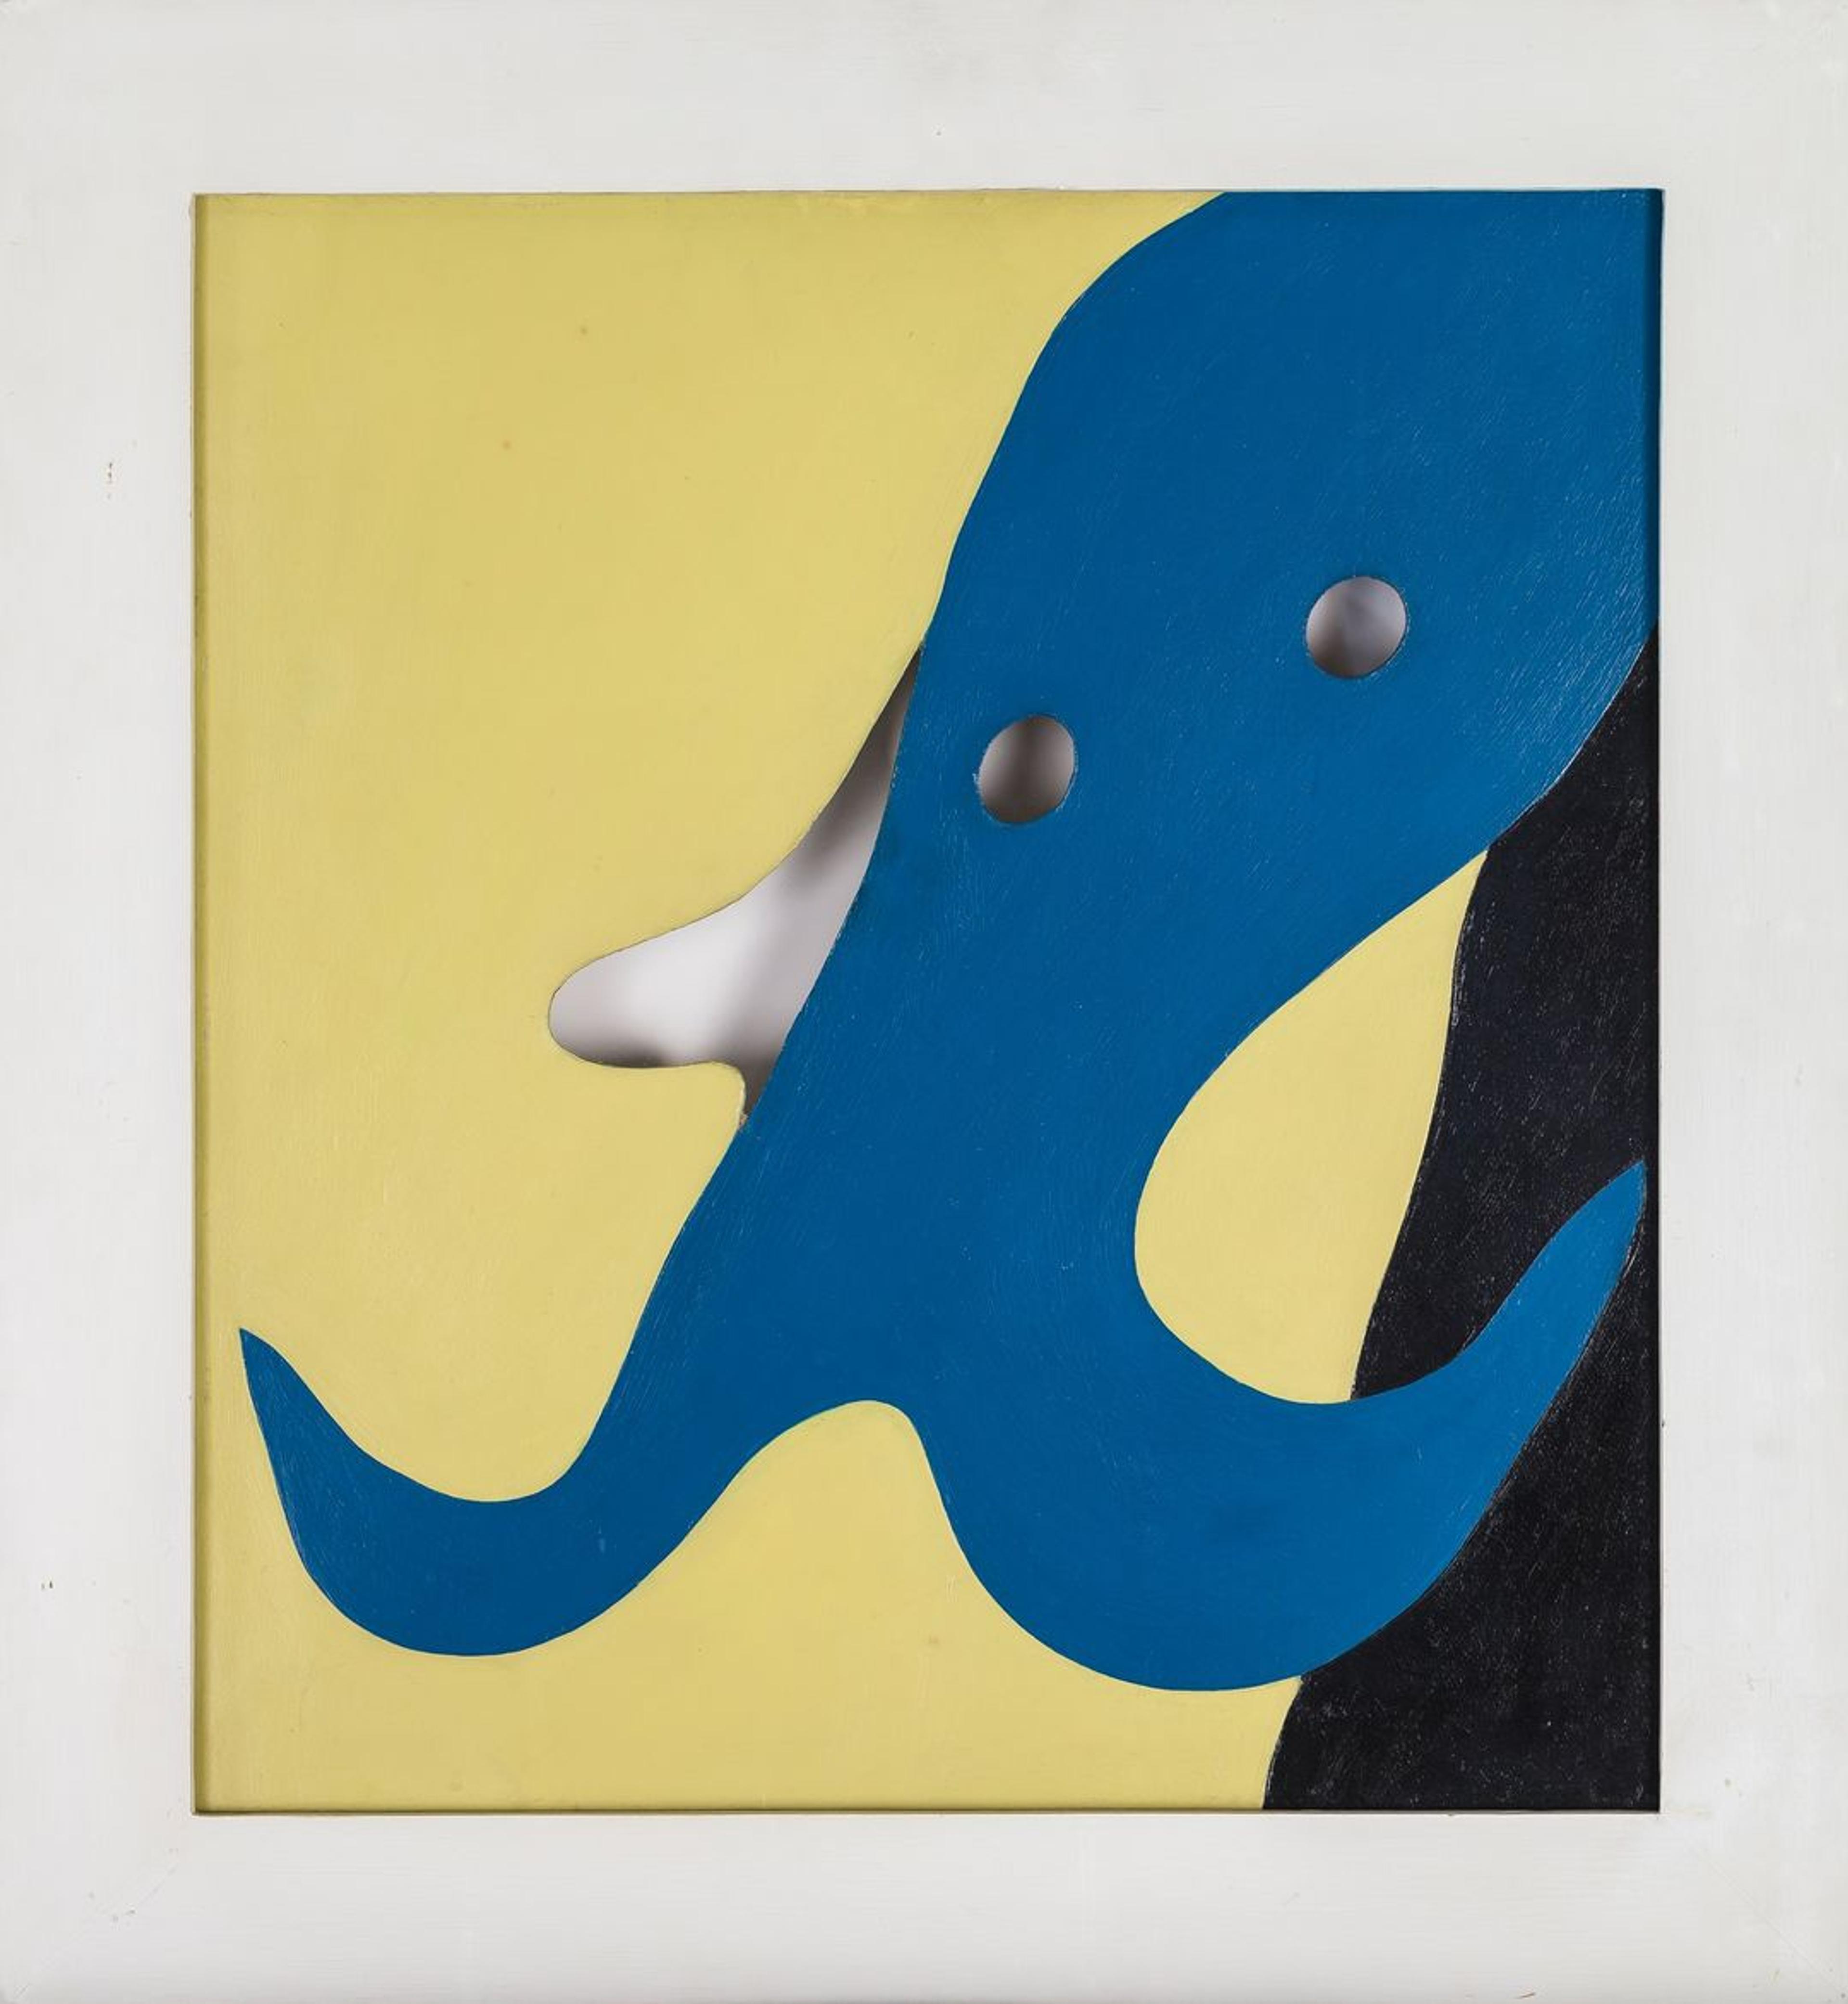 Et abstrakt maleri med gule, blå og svarte felt, i avrundede former.